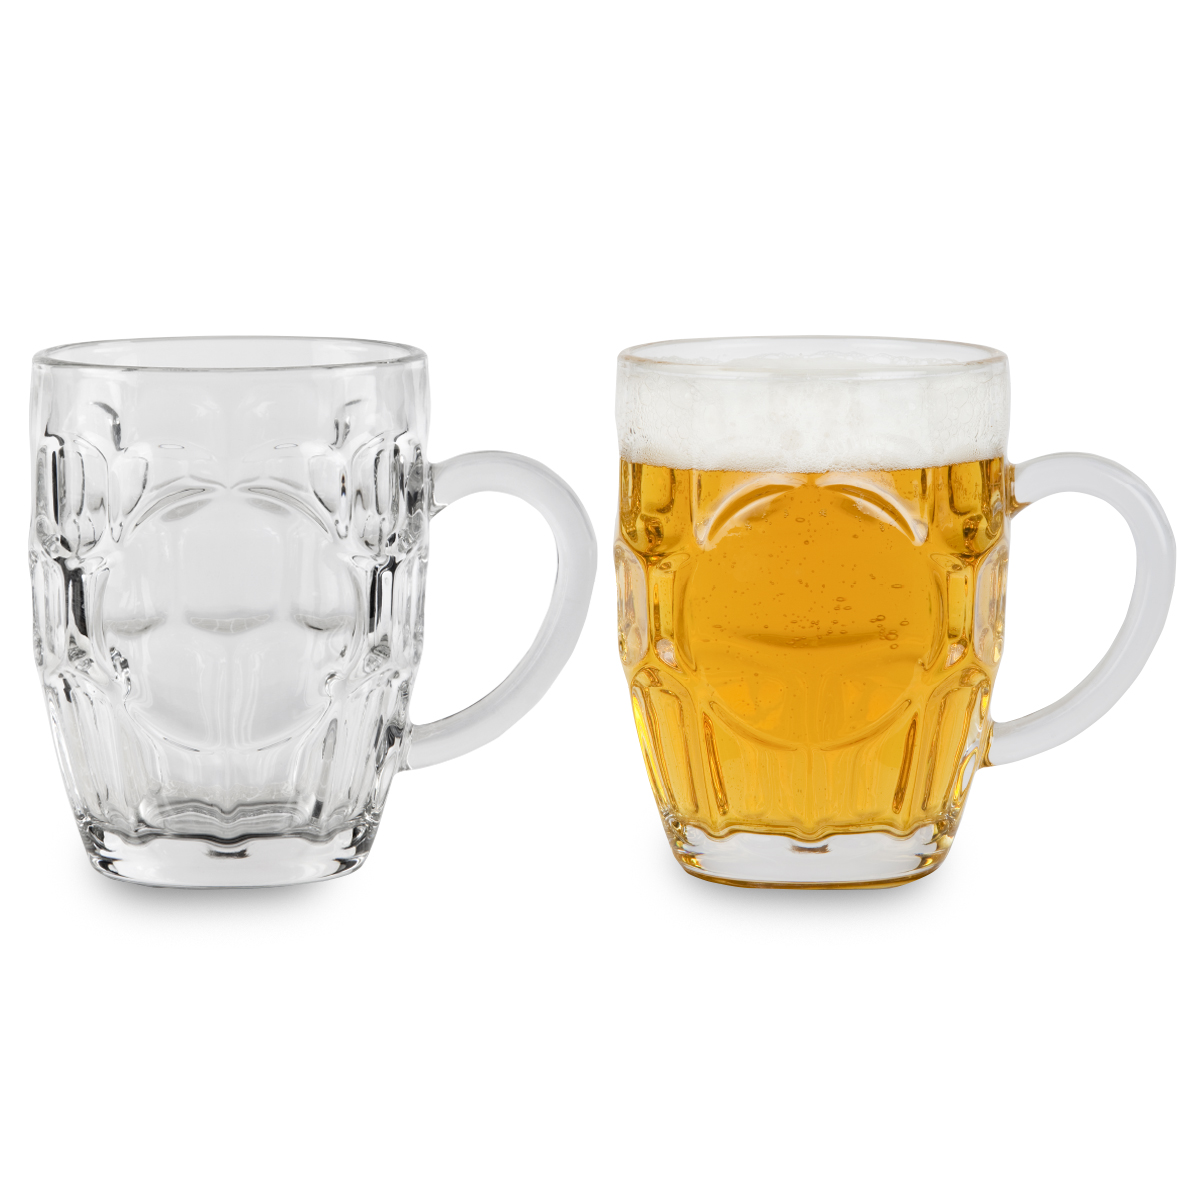 מנהיים - כוס בירה קלאסית.
נפח 500 מ”ל.
מידות הכוס: B73,T95,H125 מ”מ.